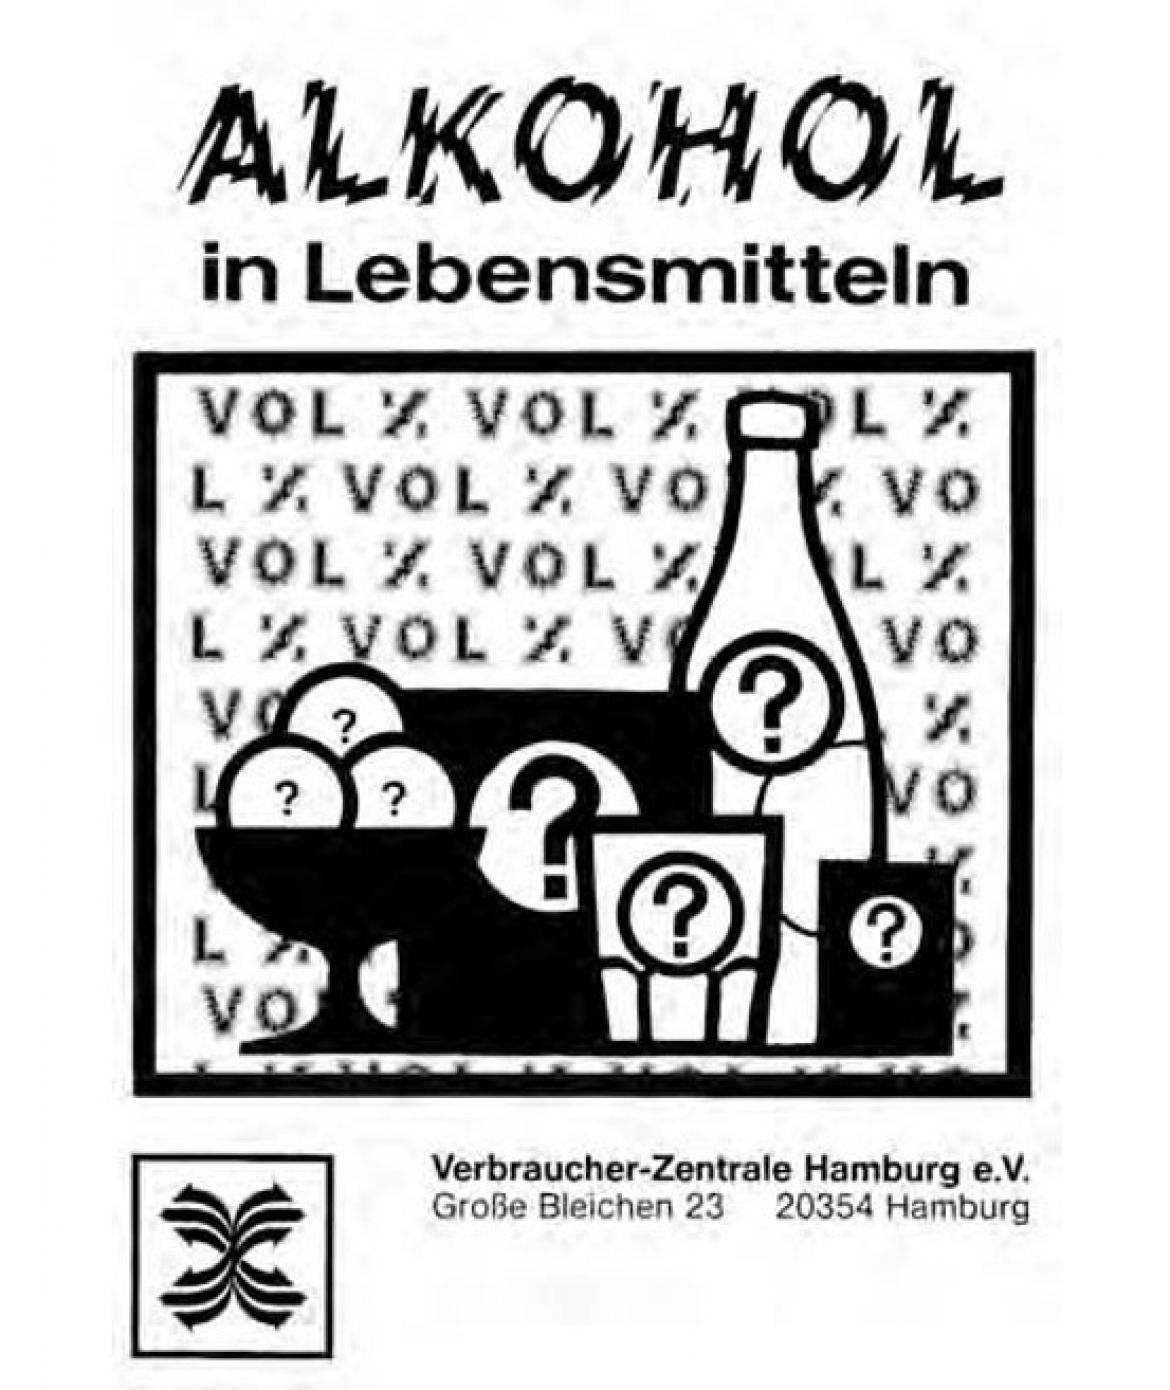 Broschüre "Alkohol in Lebensmitteln" von der Verbraucher-Zentrale (1985)